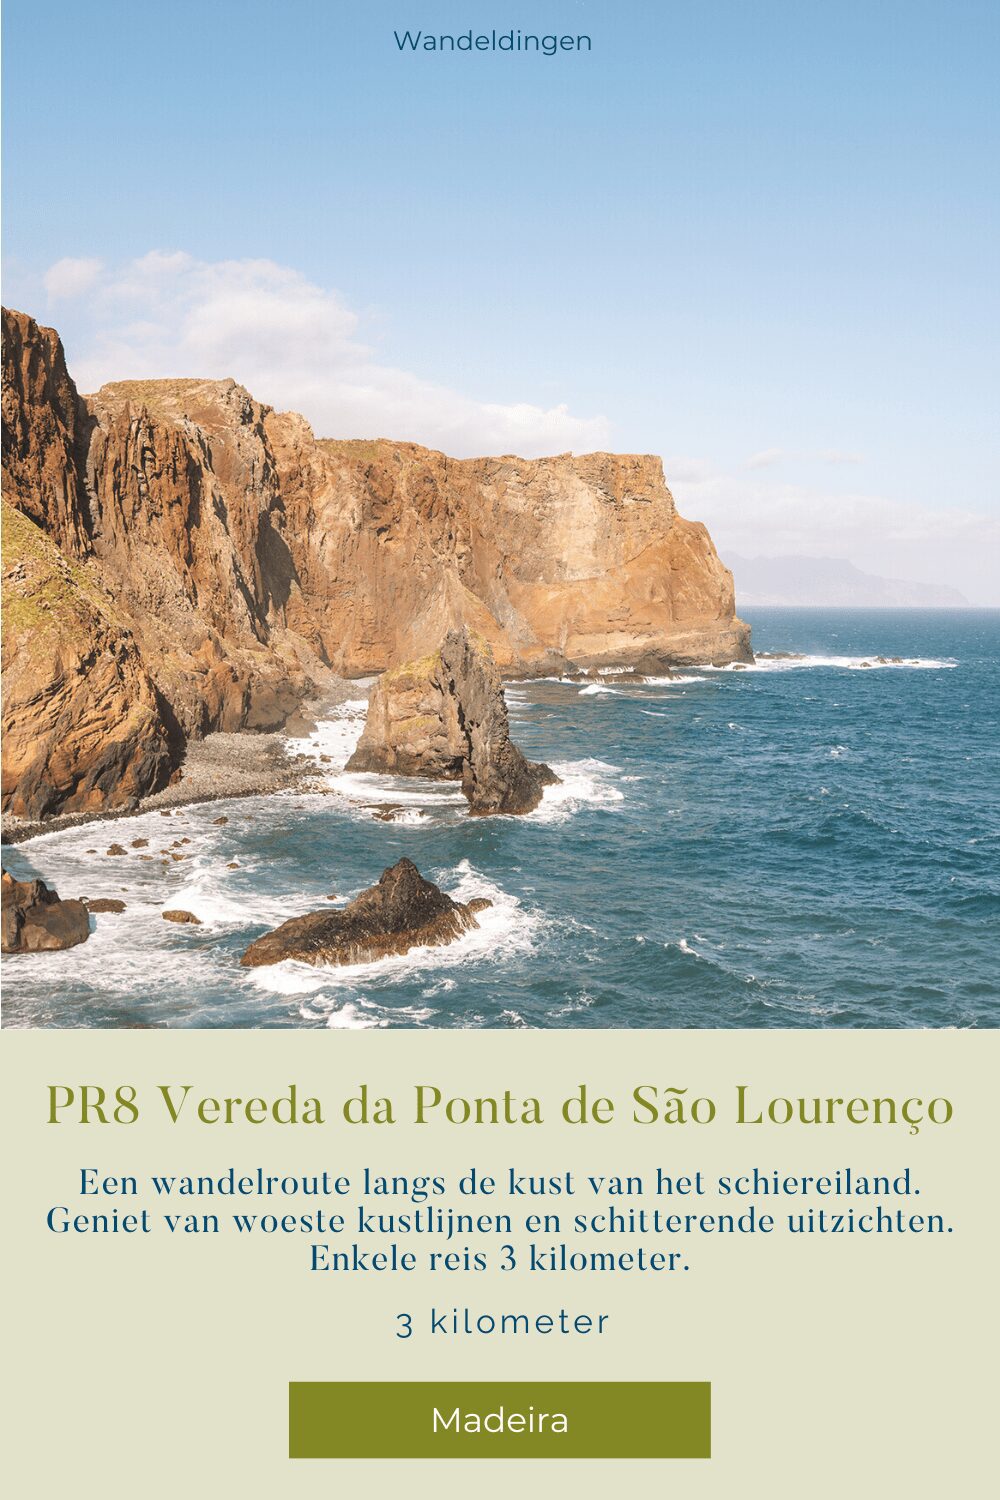 PR8 Madeira